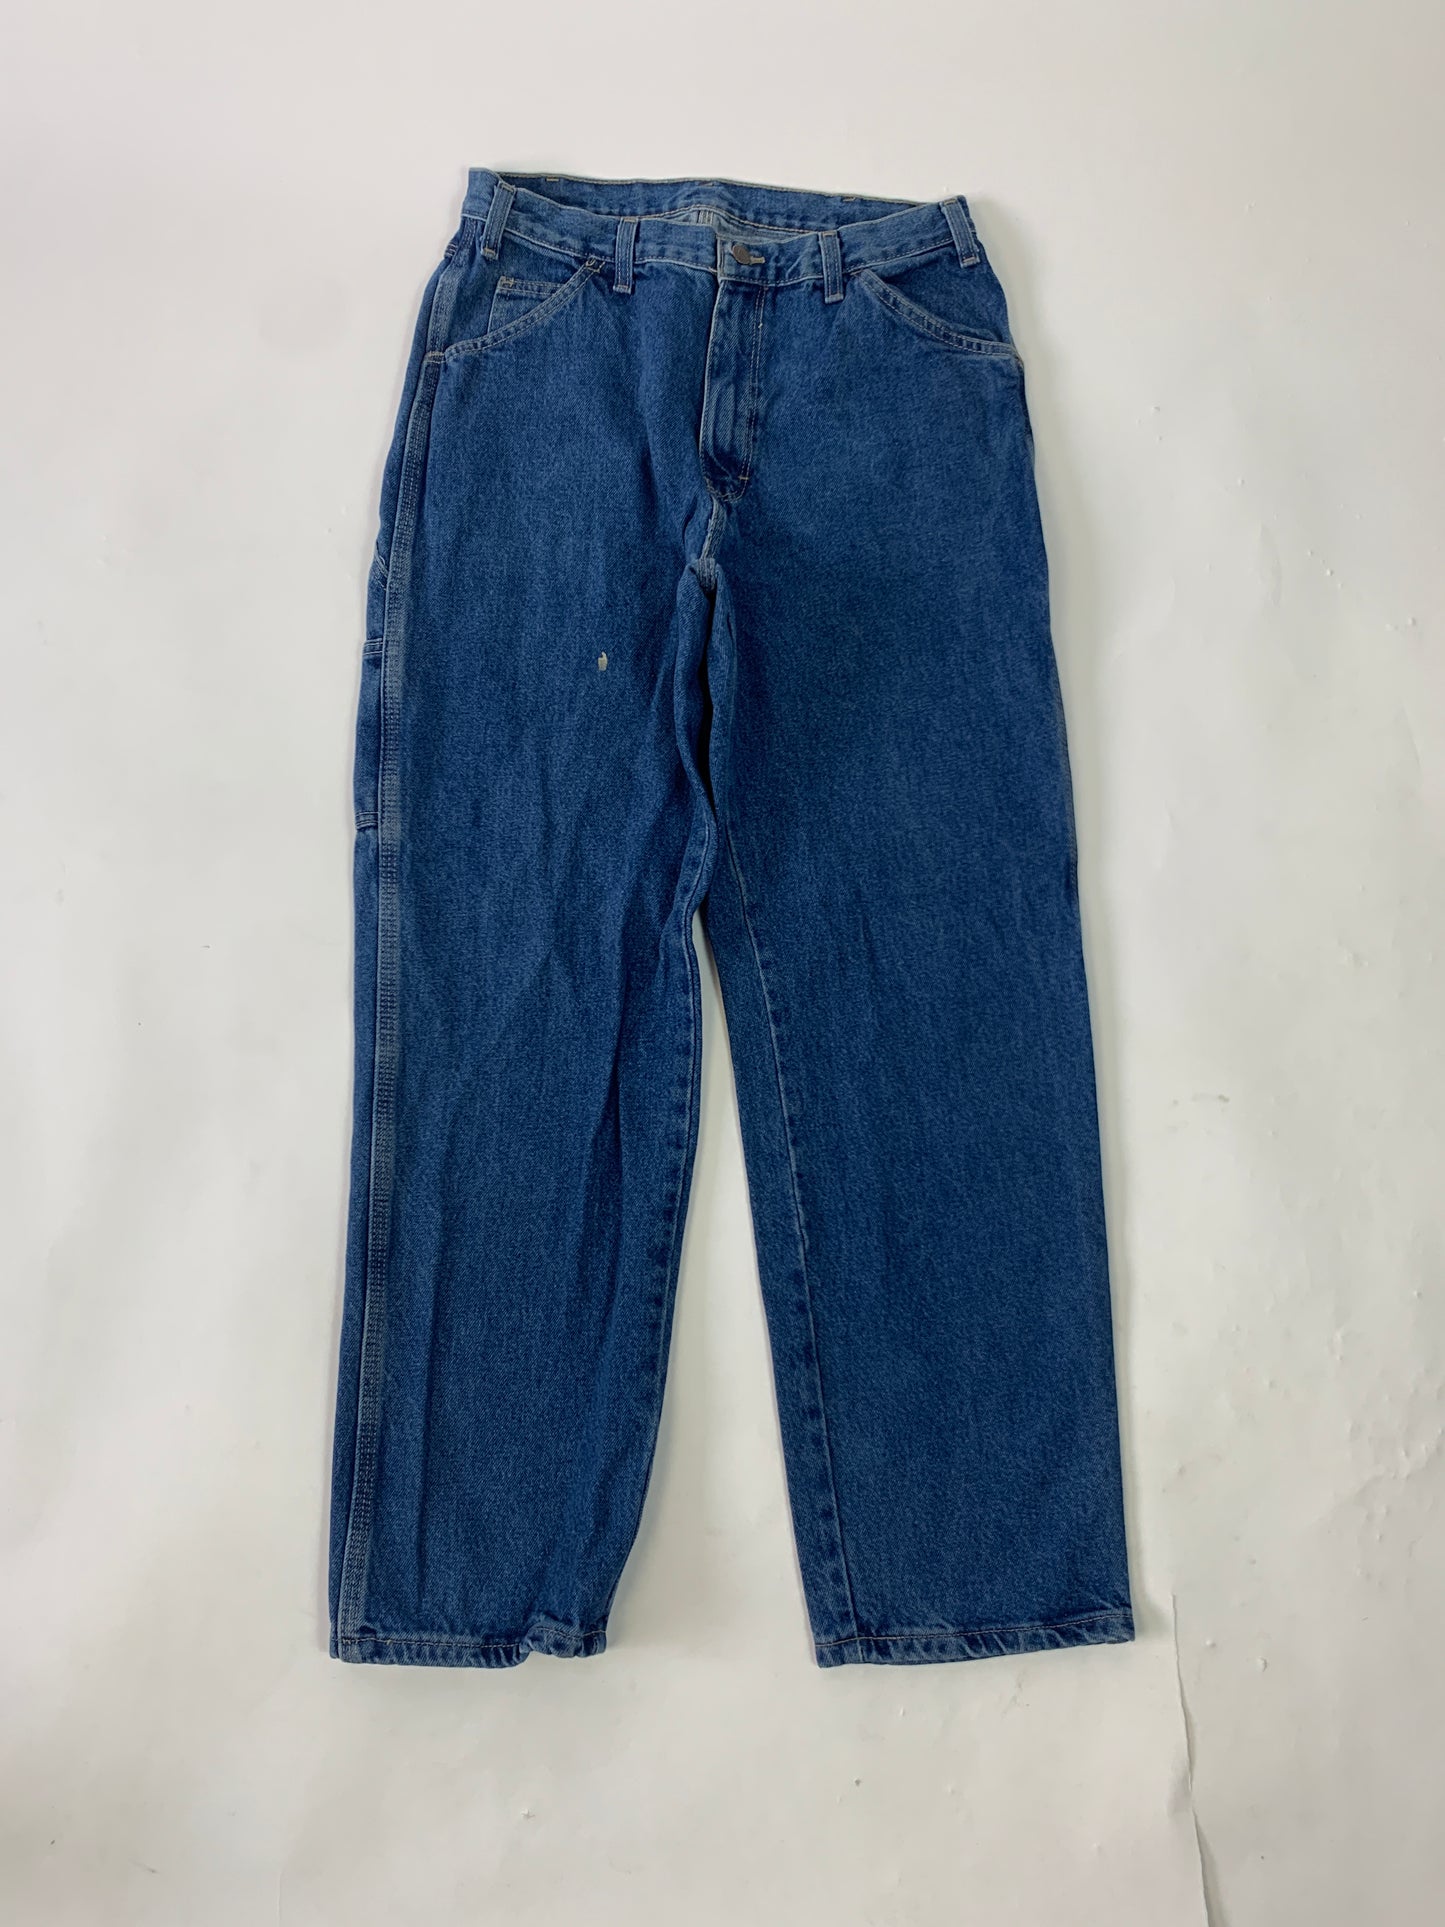 Dickies Vintage Carpenter Jeans - 34 x 30